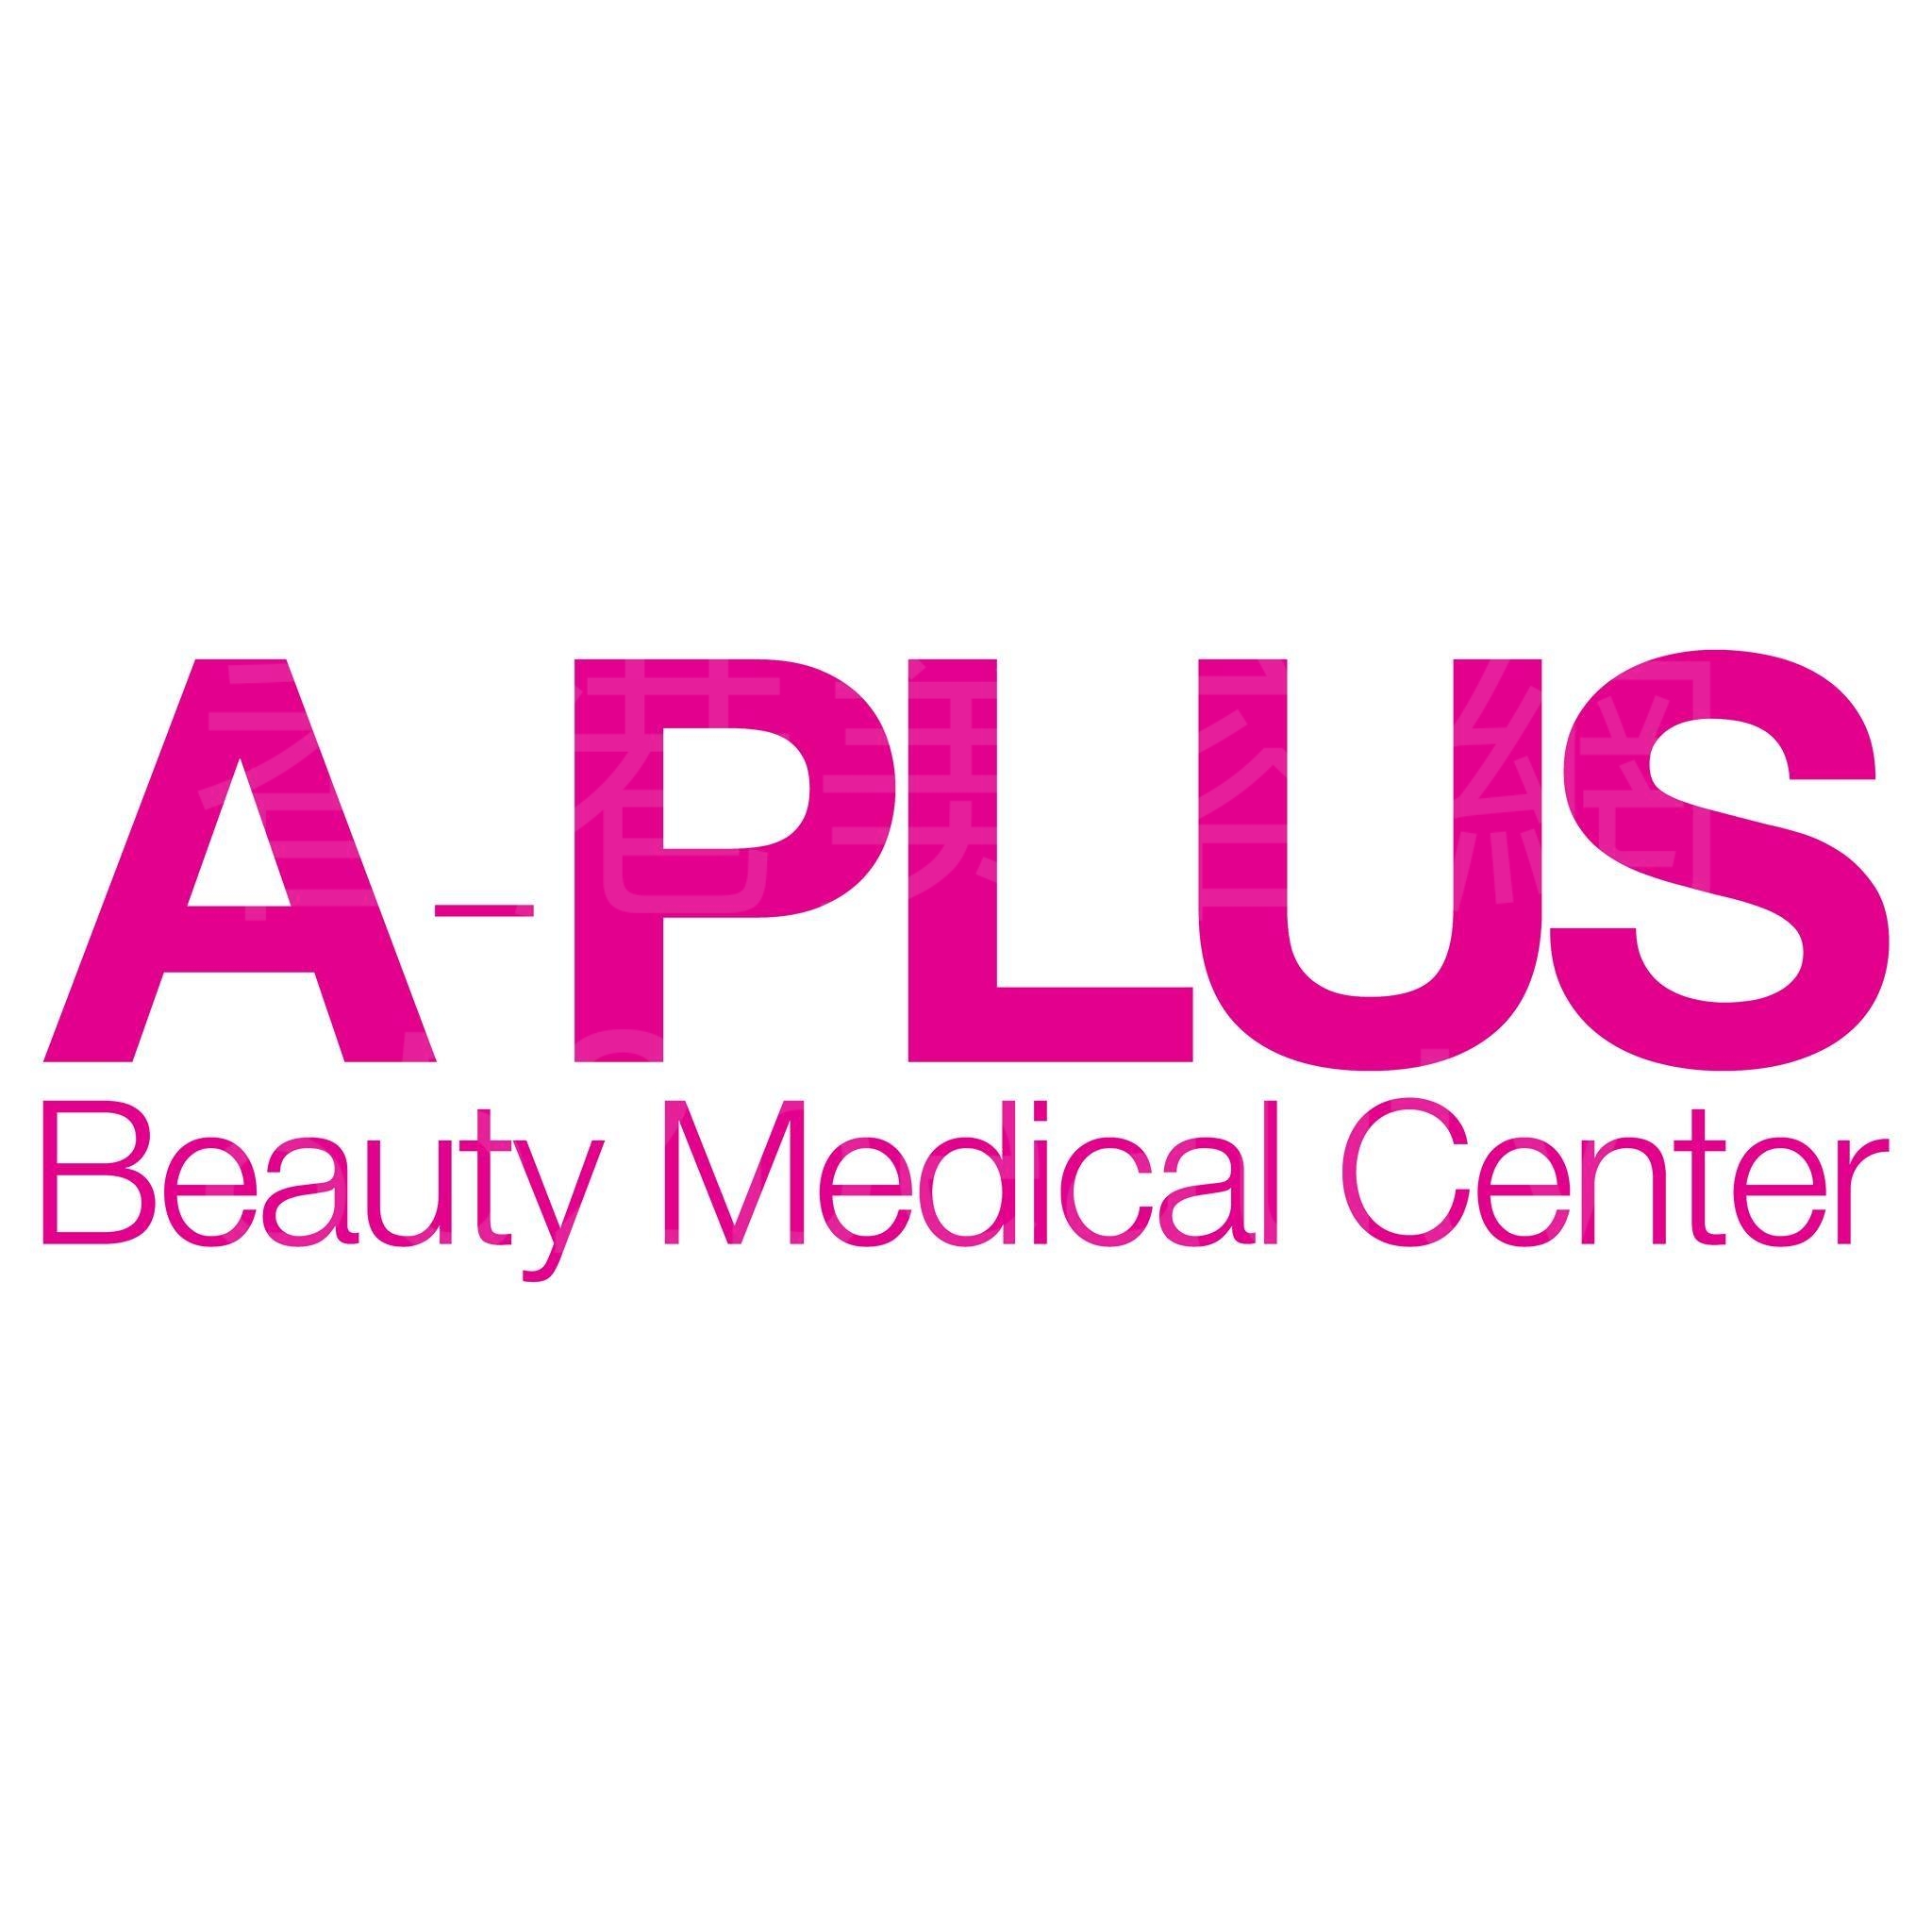 香港美容網 Hong Kong Beauty Salon 美容院 / 美容師: A-Plus Beauty Medical Center 醫學美容中心 (尖沙咀店)